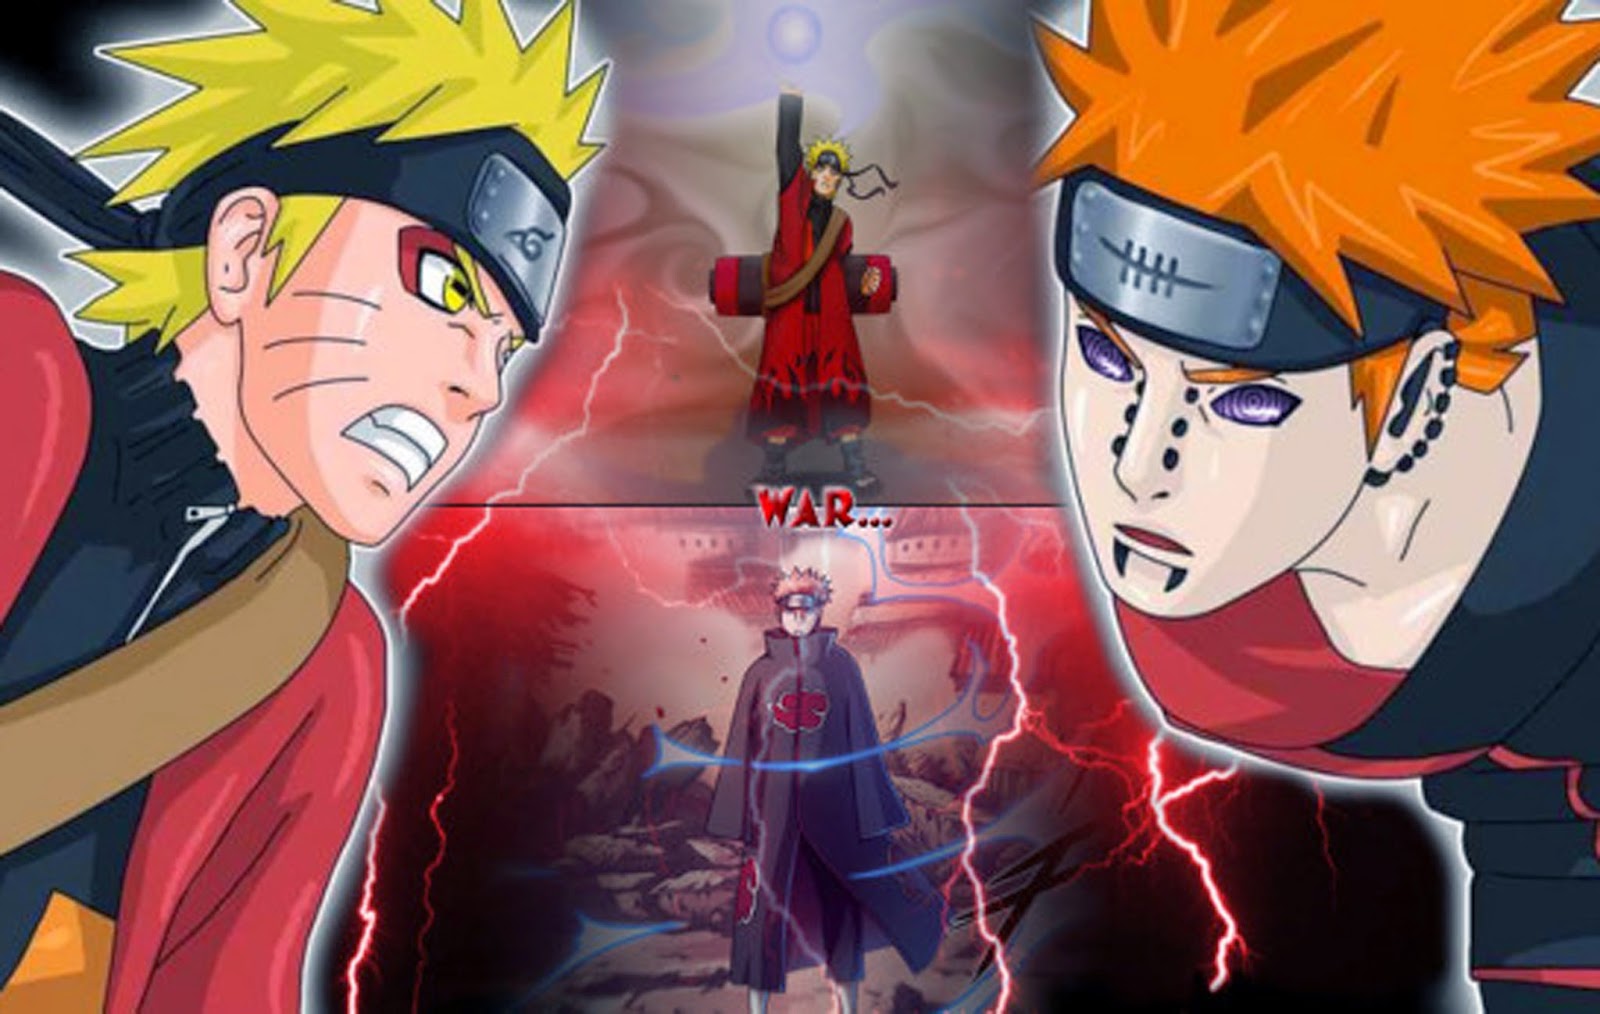 Foto Lucu Bikin Ngakak Naruto Terlengkap Display Picture Unik